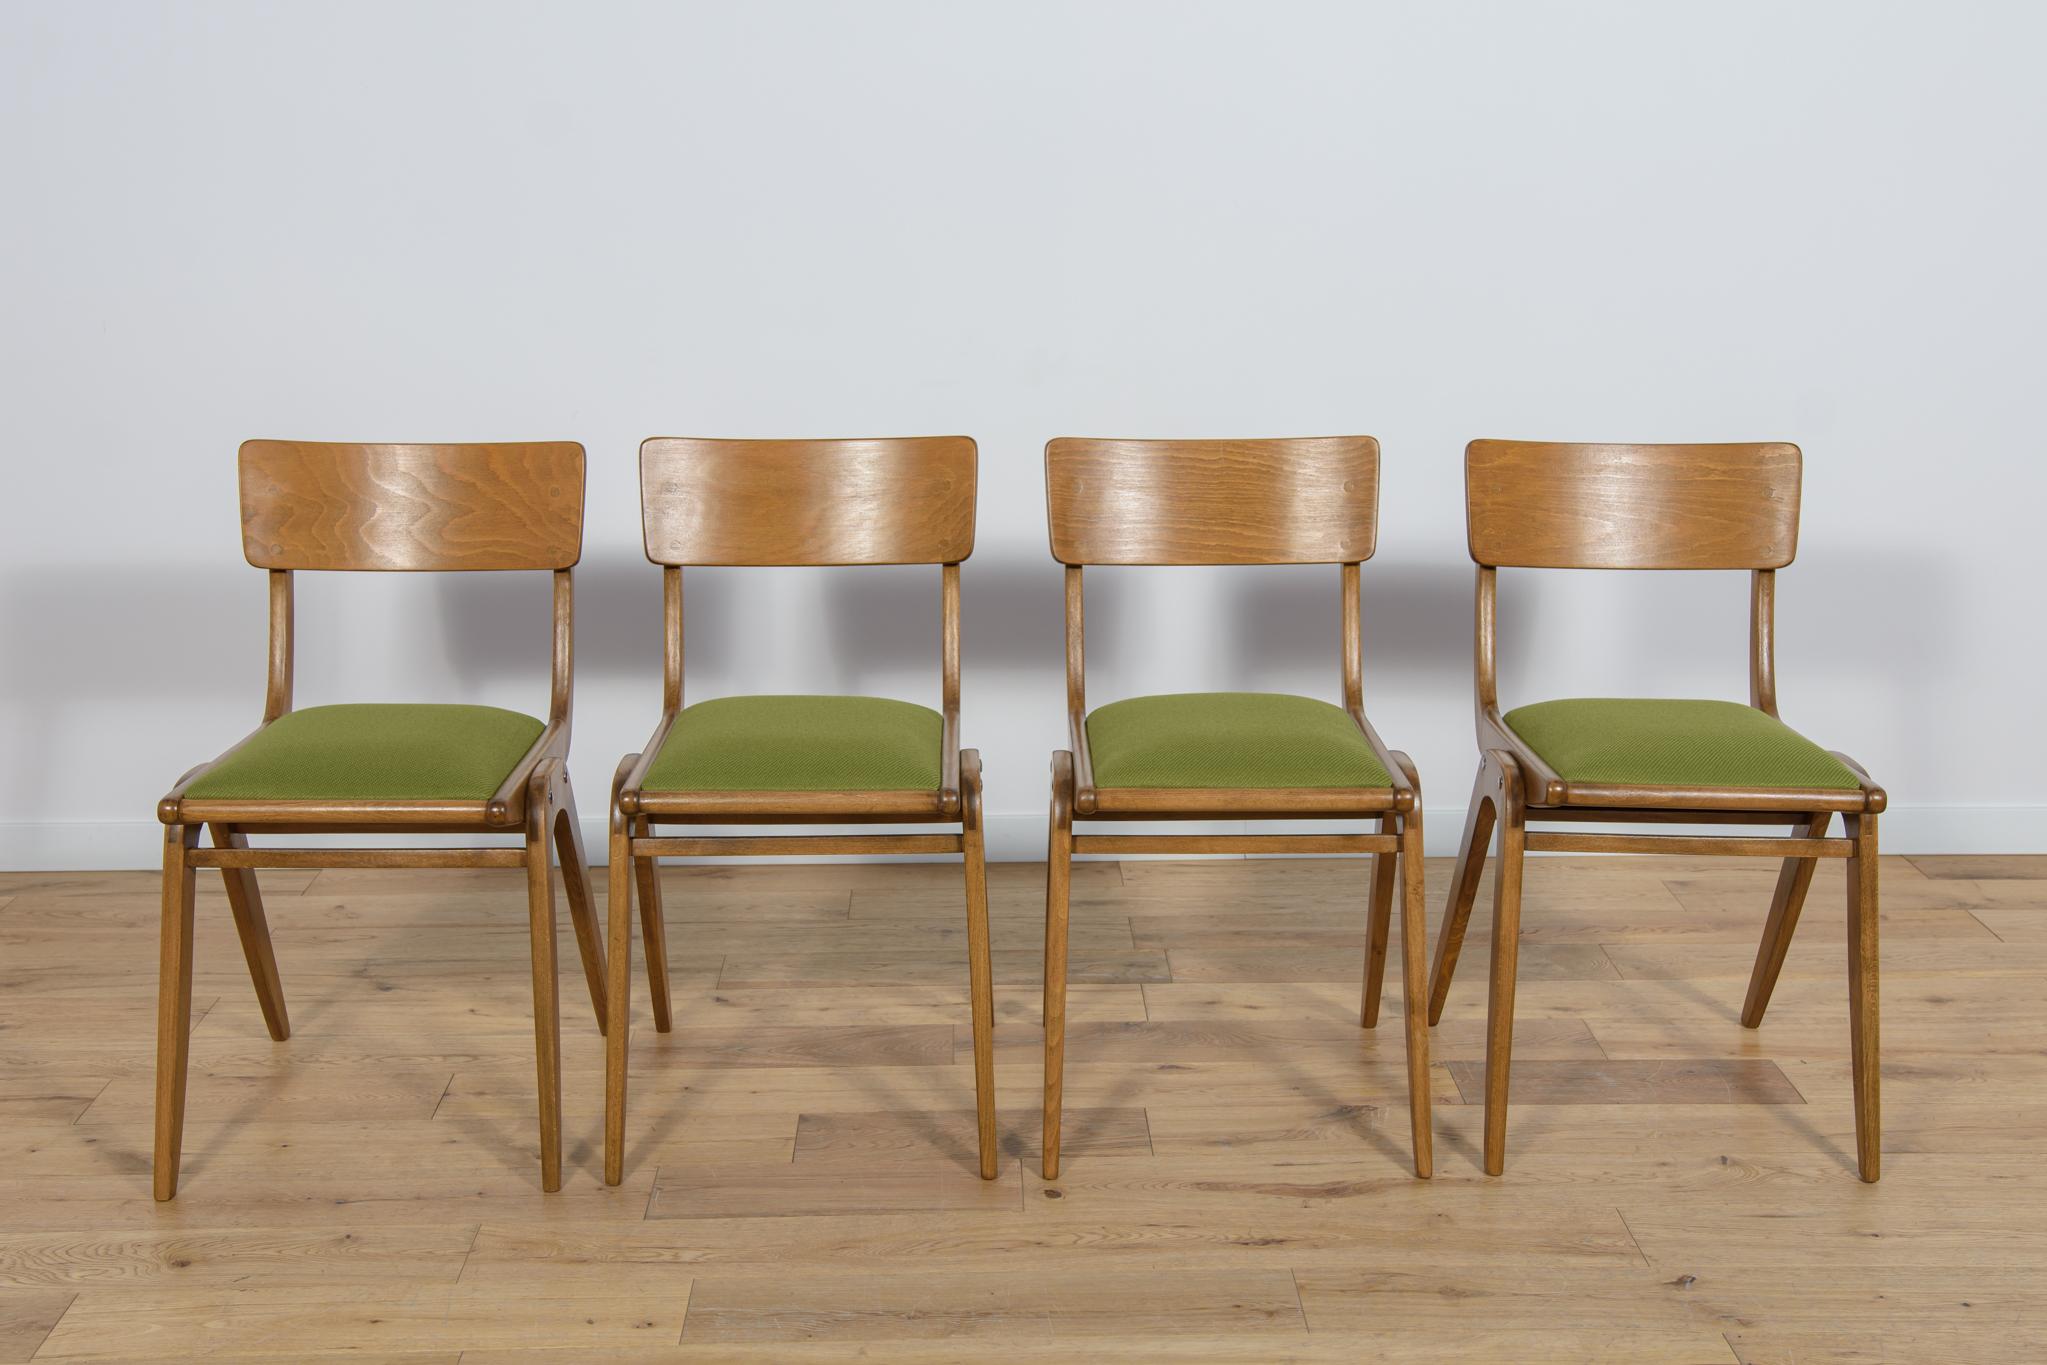 Satz von 4 polnischen Esszimmerstühlen Modell Boomerang 229XB aus der Gościcińskie Möbelfabrik in den 1960er Jahren. Das Gestell der Stühle ist aus Buchenholz gefertigt. Die Holzelemente wurden von der alten Oberfläche gereinigt, mit eichenfarbener